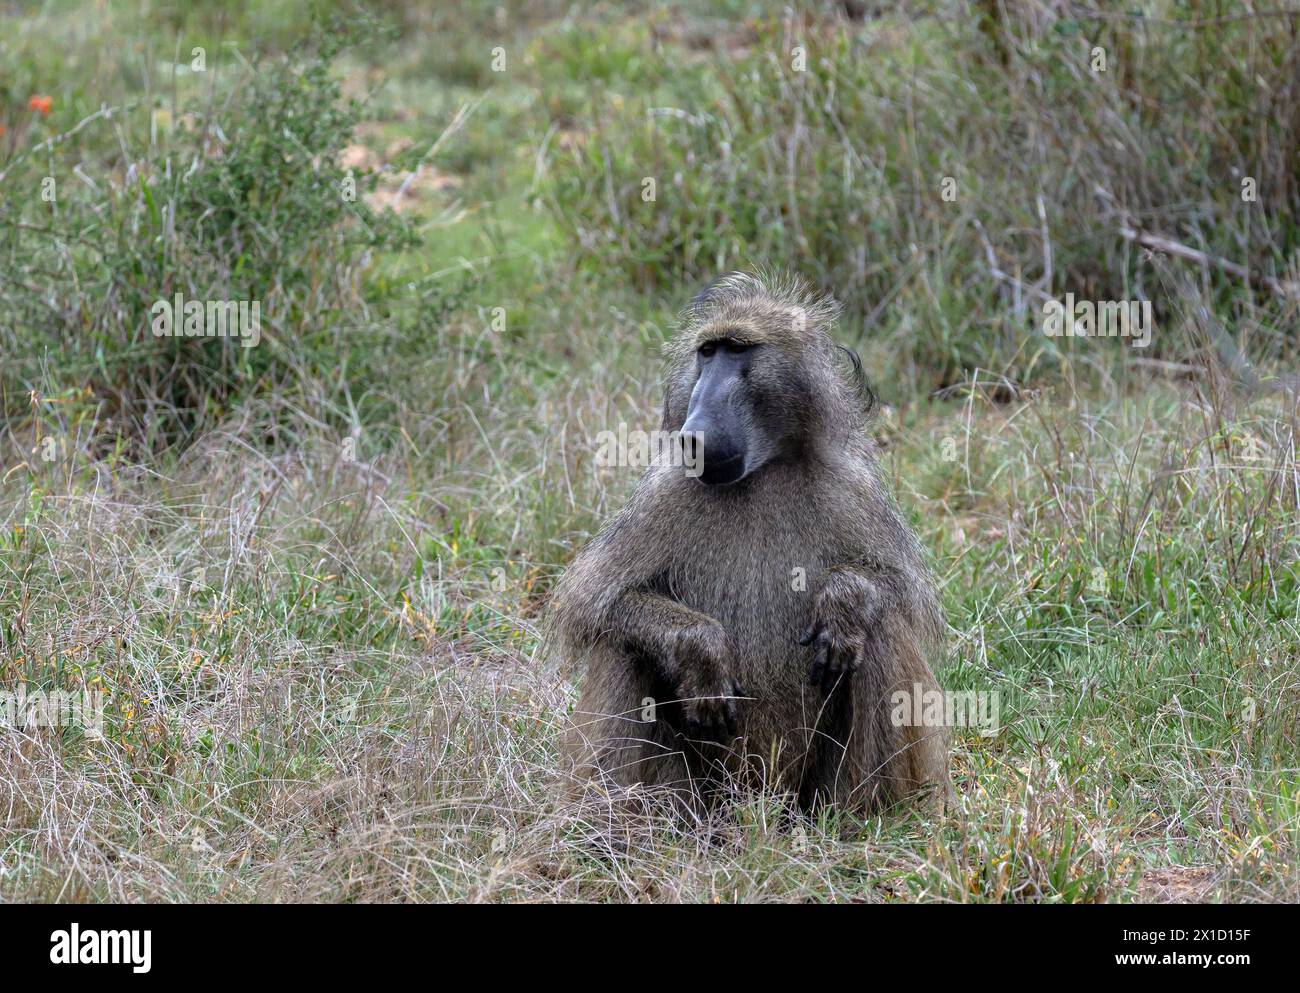 Safari a savannah. Babbuino Chacma nel Parco Nazionale di Kruger, Sud Africa. Una scimmia soffice siede nell'erba. Habitat naturale degli animali, fauna selvatica, natu selvatico Foto Stock